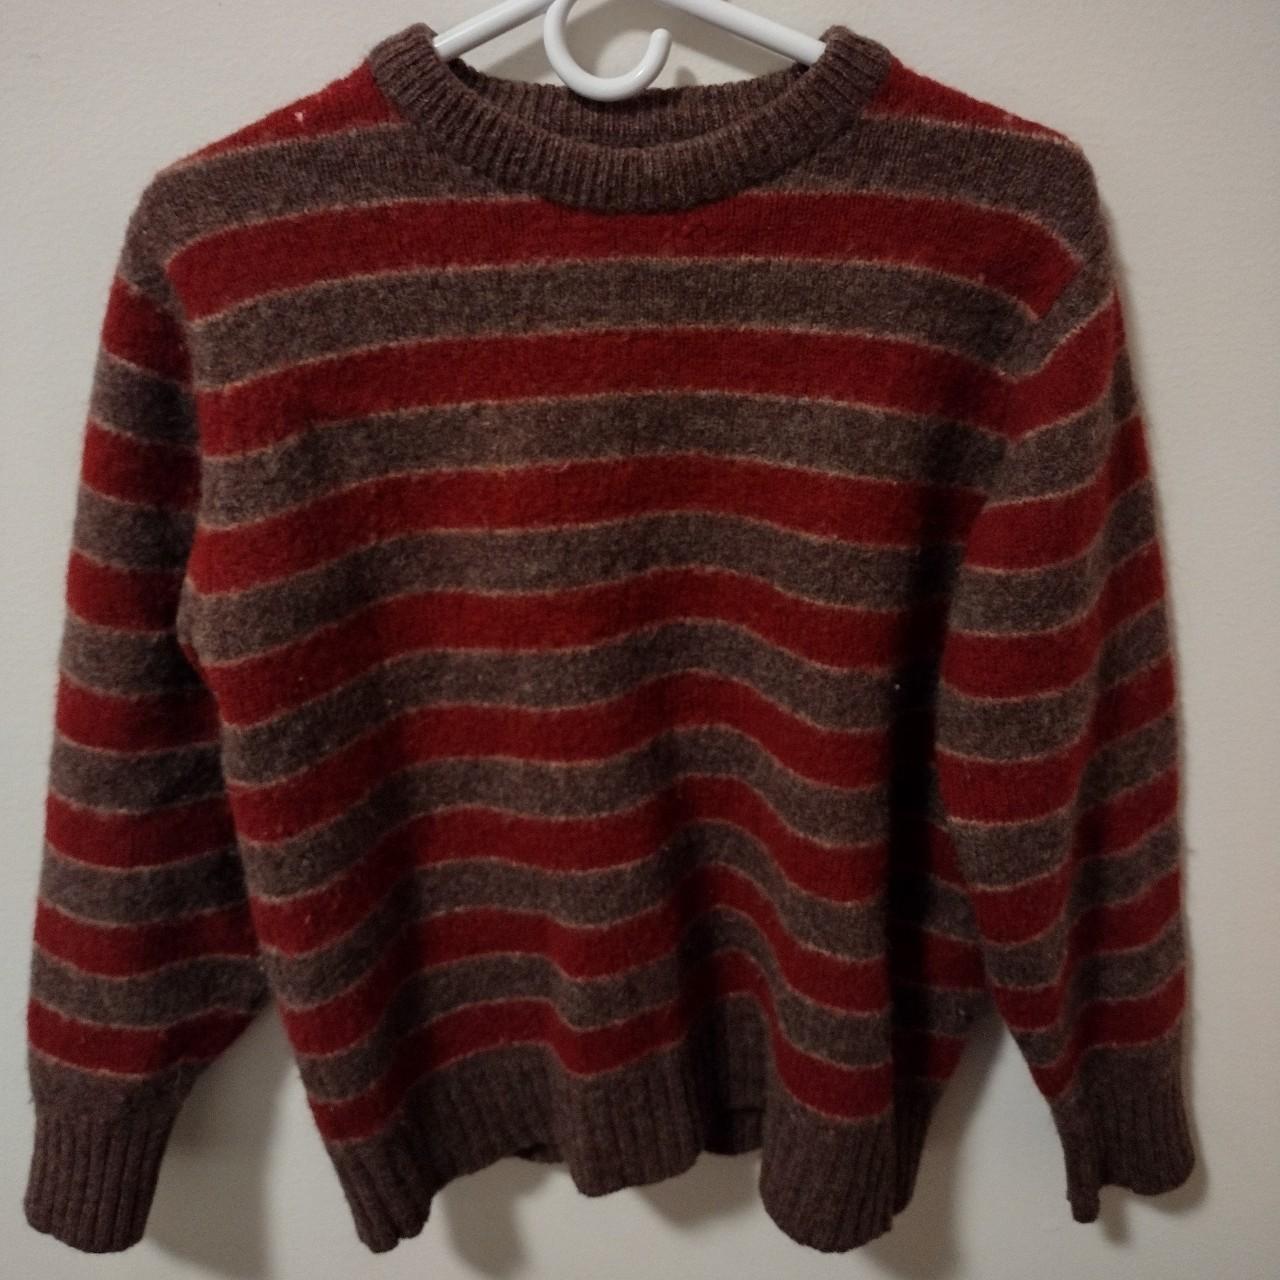 Men and Women's Striped Grandpa Sweater Wool... - Depop